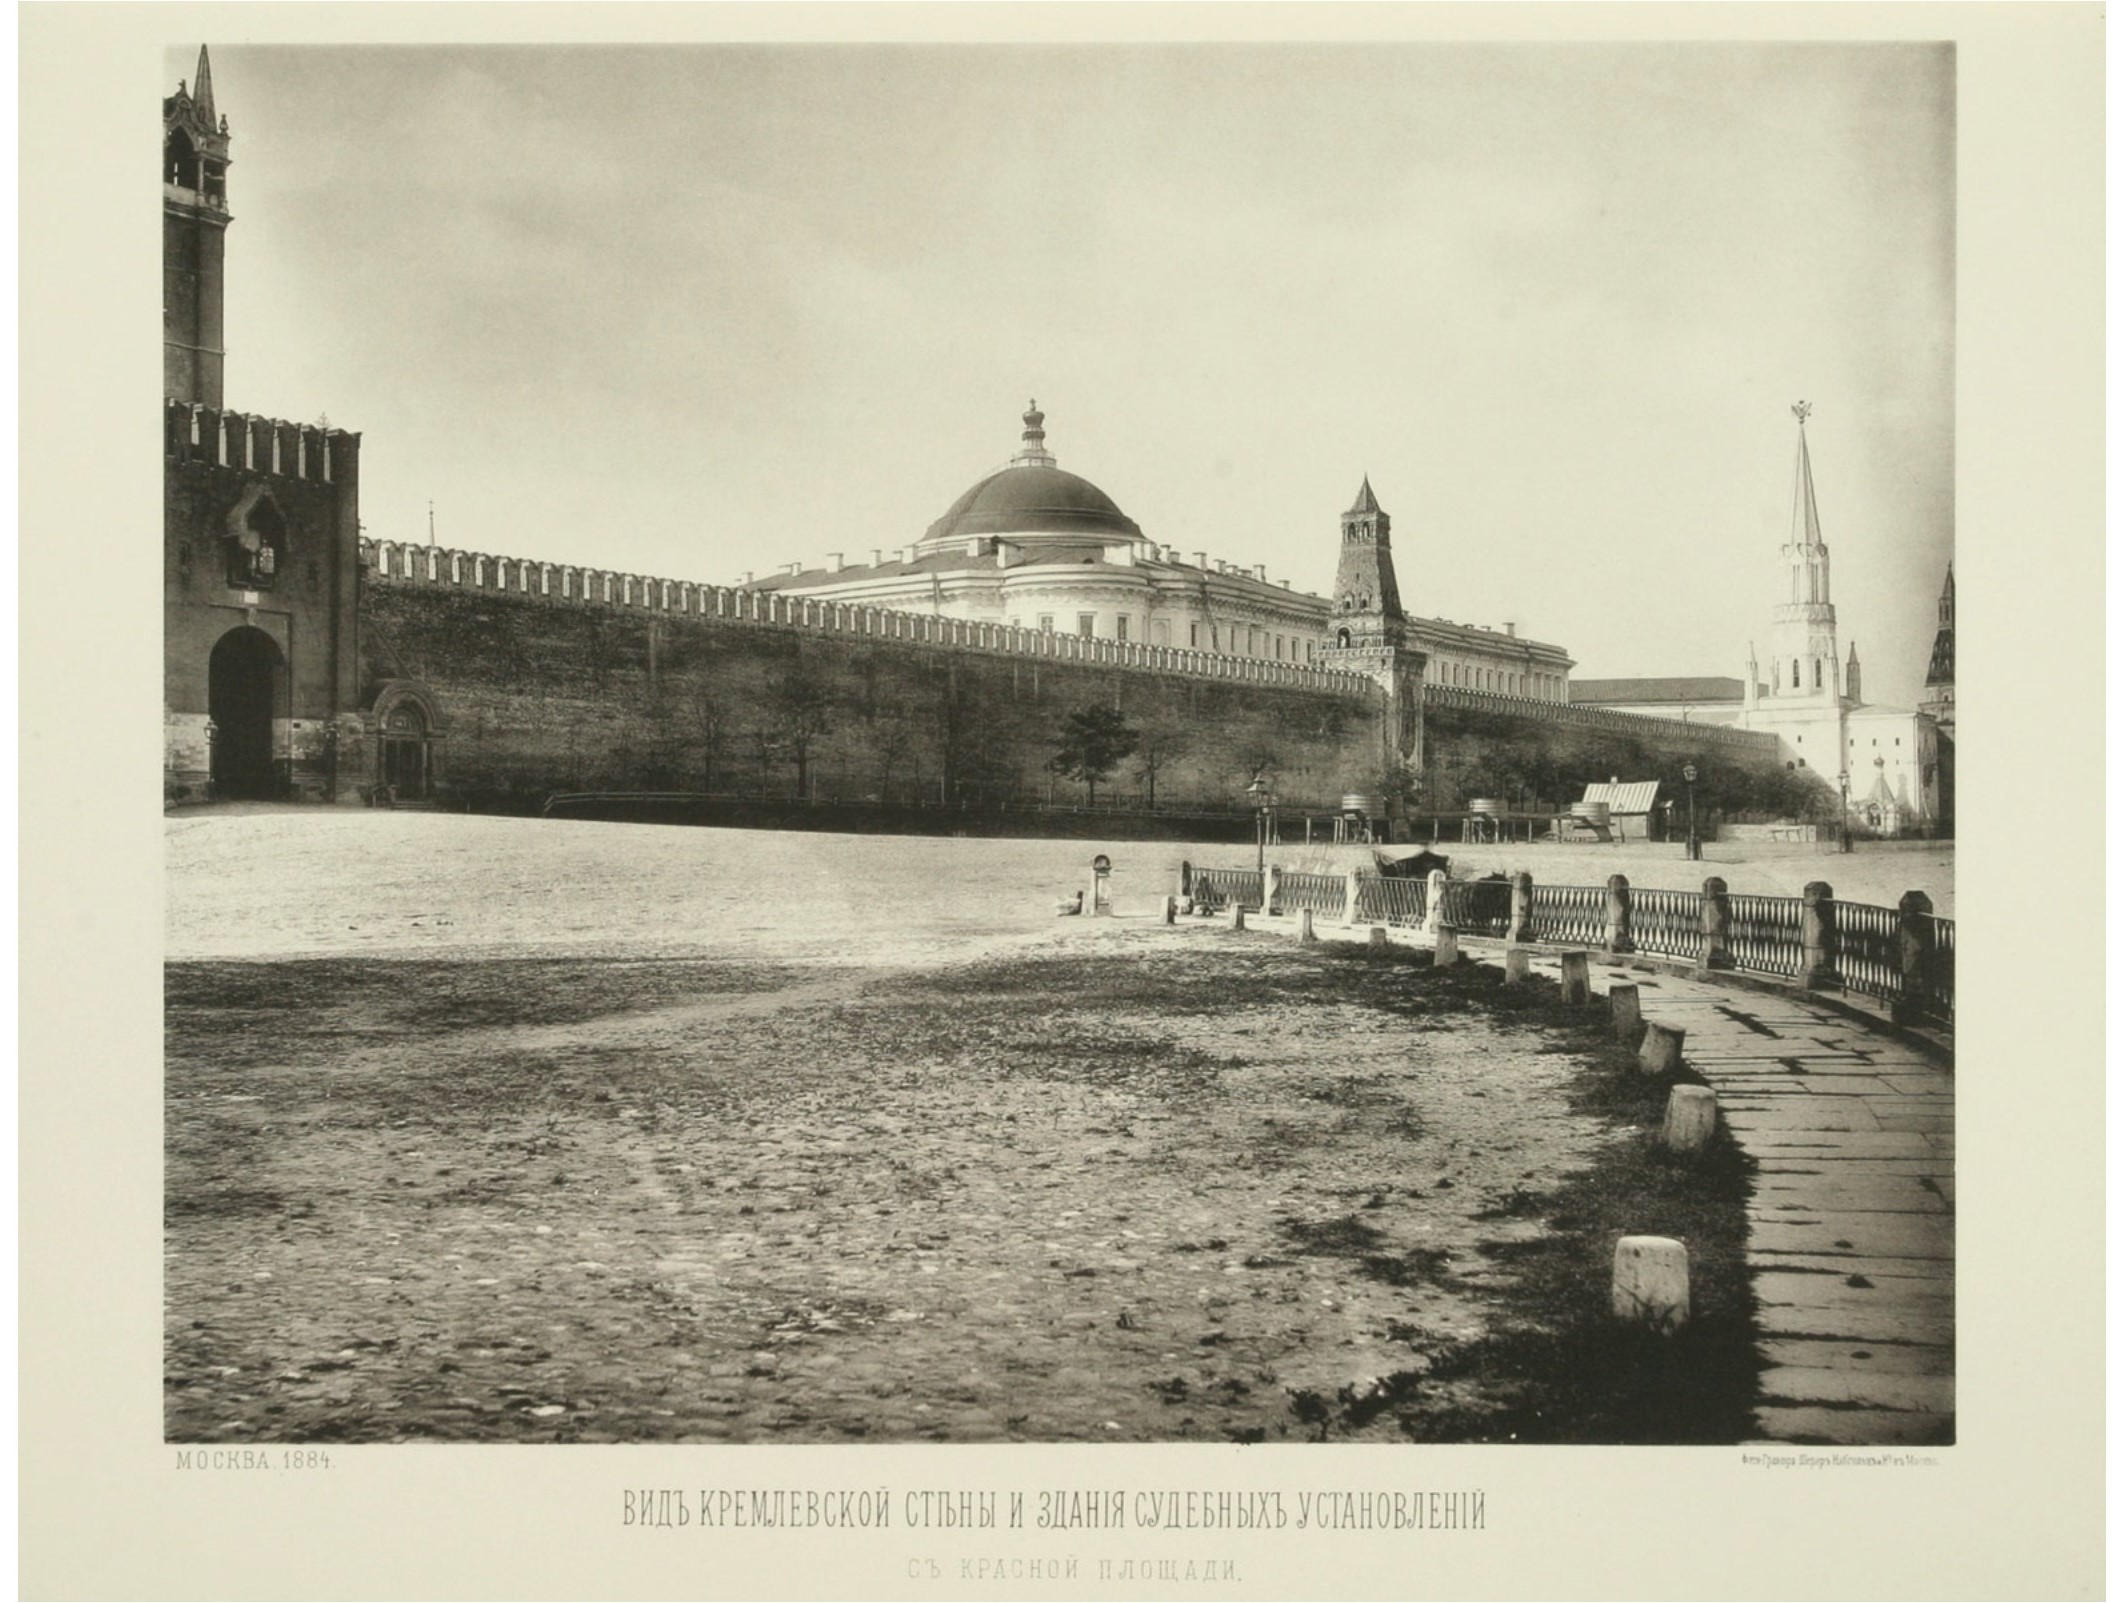 Вид Кремлевской стены из здания Судебных установлений